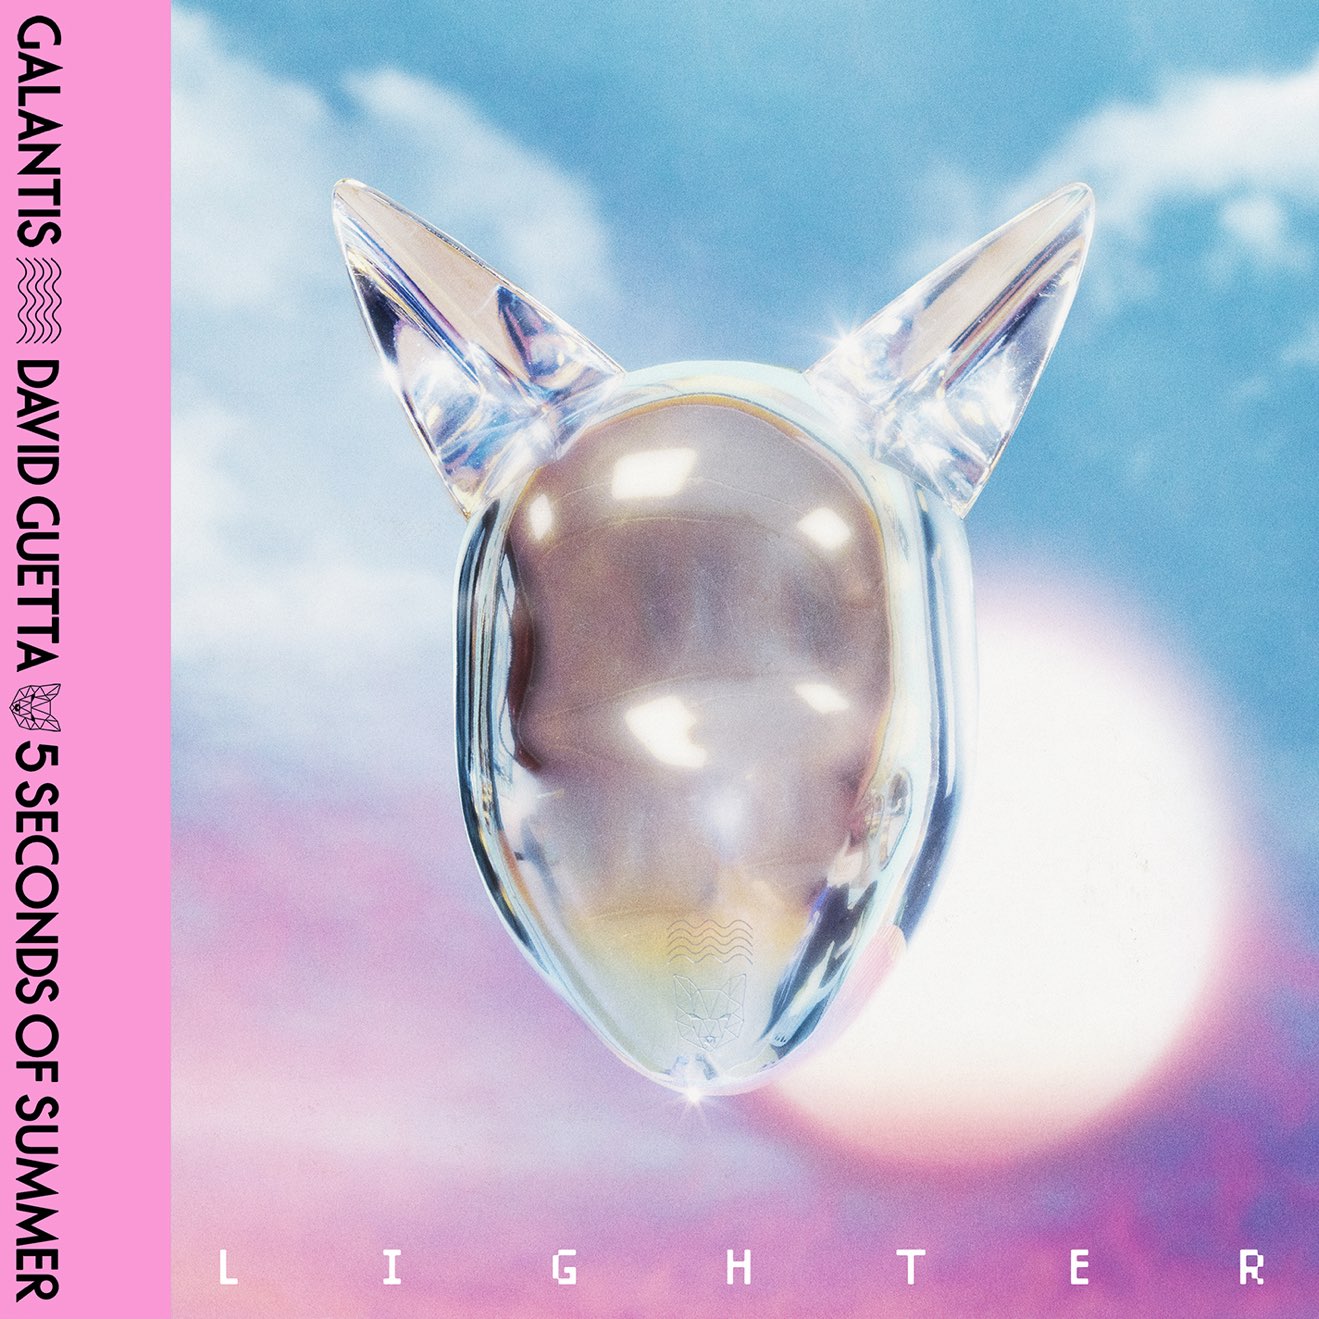 Galantis, David Guetta & 5 Seconds of Summer – Lighter – Single (2024) [iTunes Match M4A]